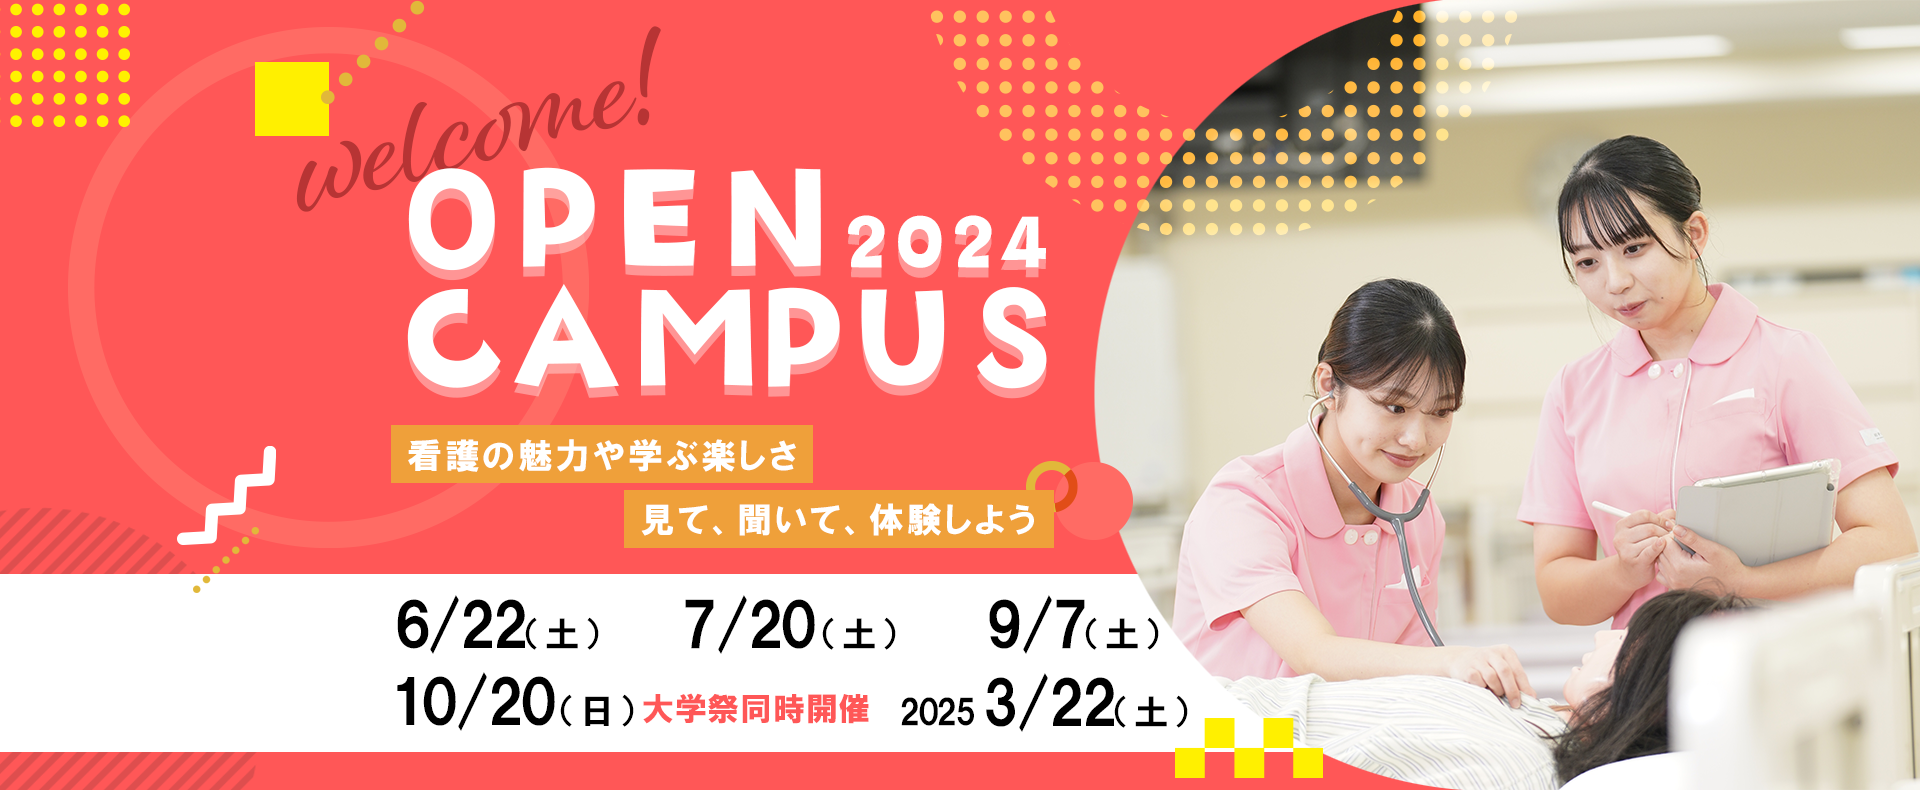 オープンキャンパス2024は、全5回開催します。